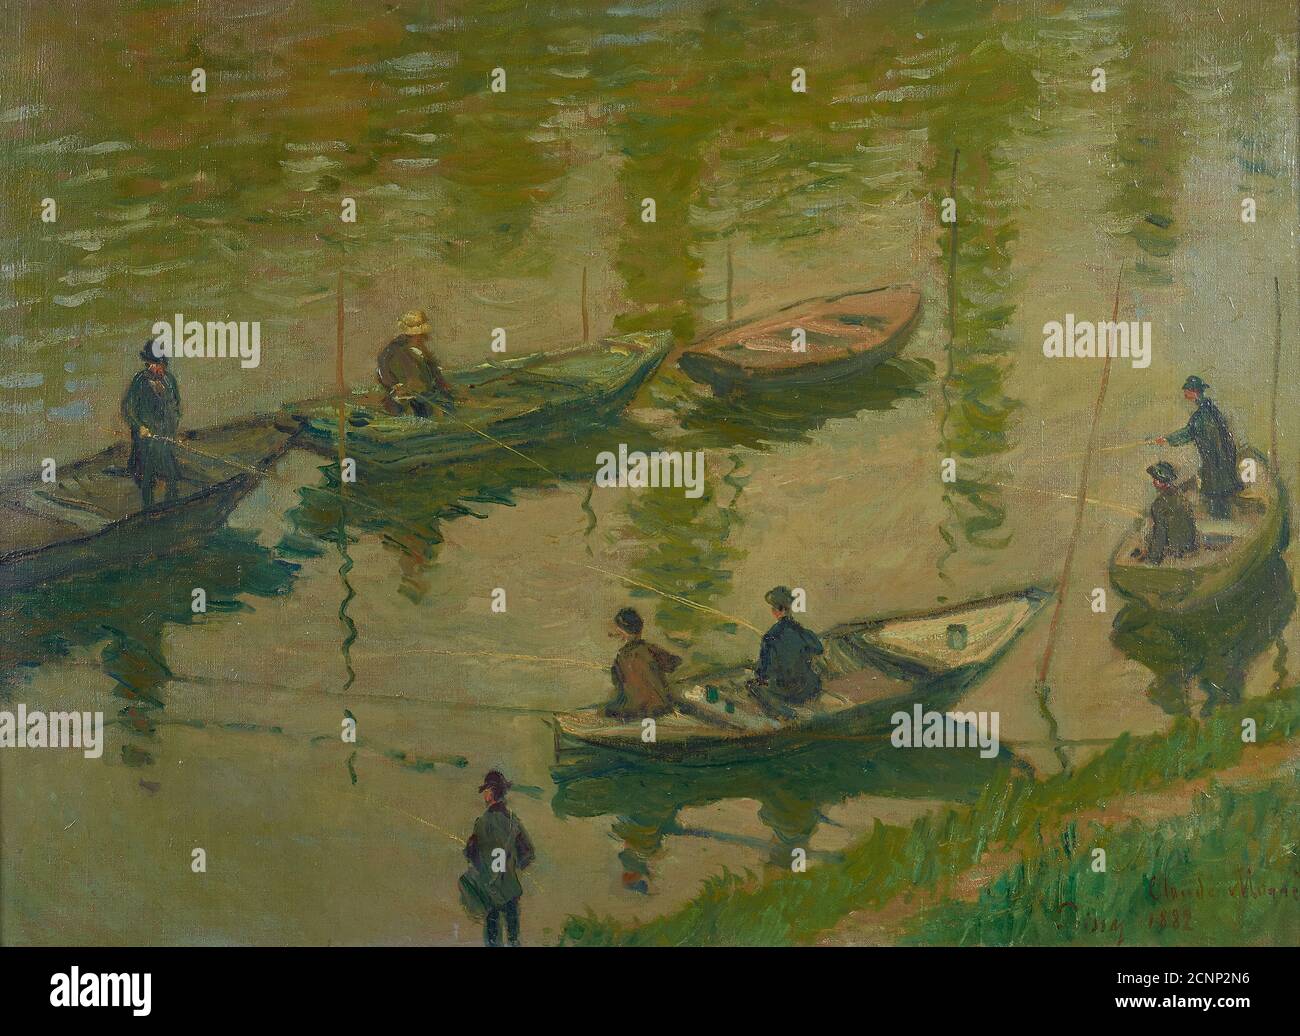 P&#xea;gueurs sur la Seine &#xe0; Poissy (pêcheurs sur la Seine à Poissy), 1882. Trouvé dans la collection de &#xd6;sterreichische Galerie Belvedere, Vienne. Banque D'Images